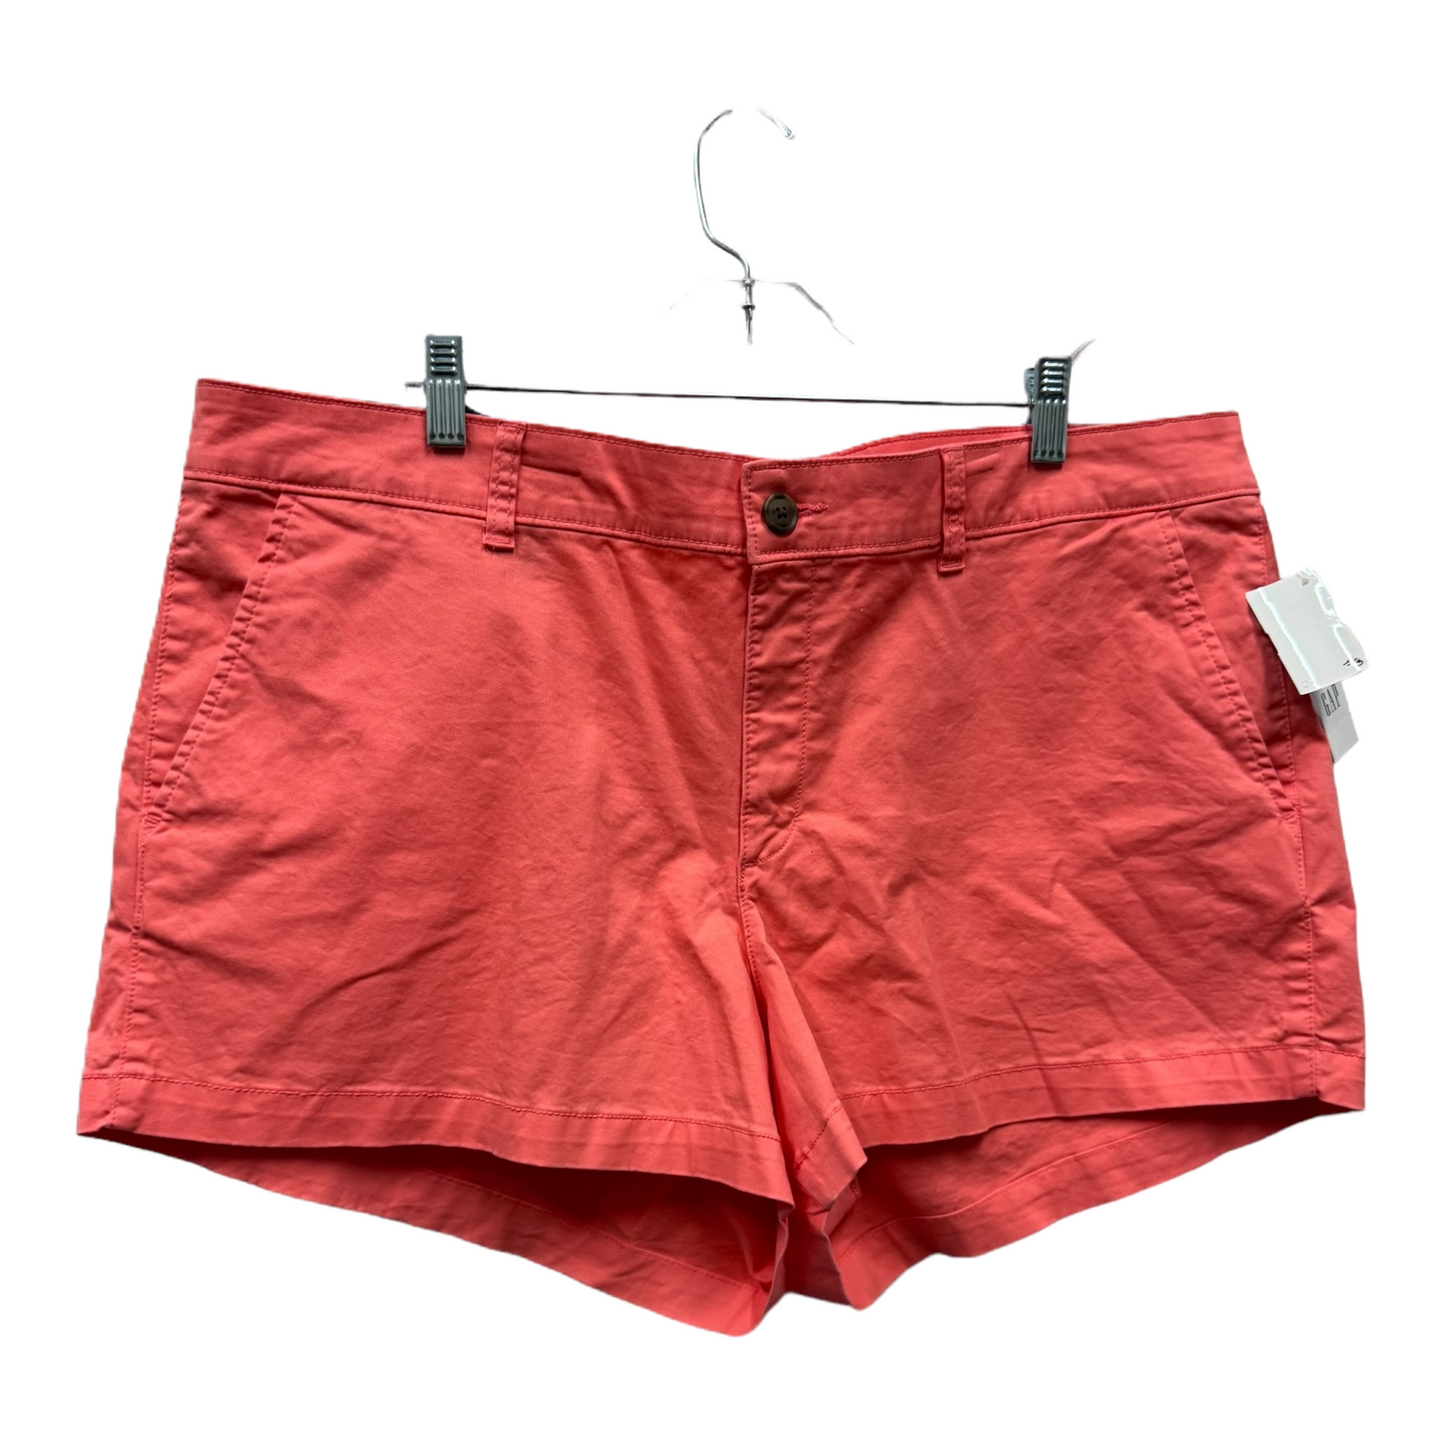 Orange Shorts By Gap, Size: 18